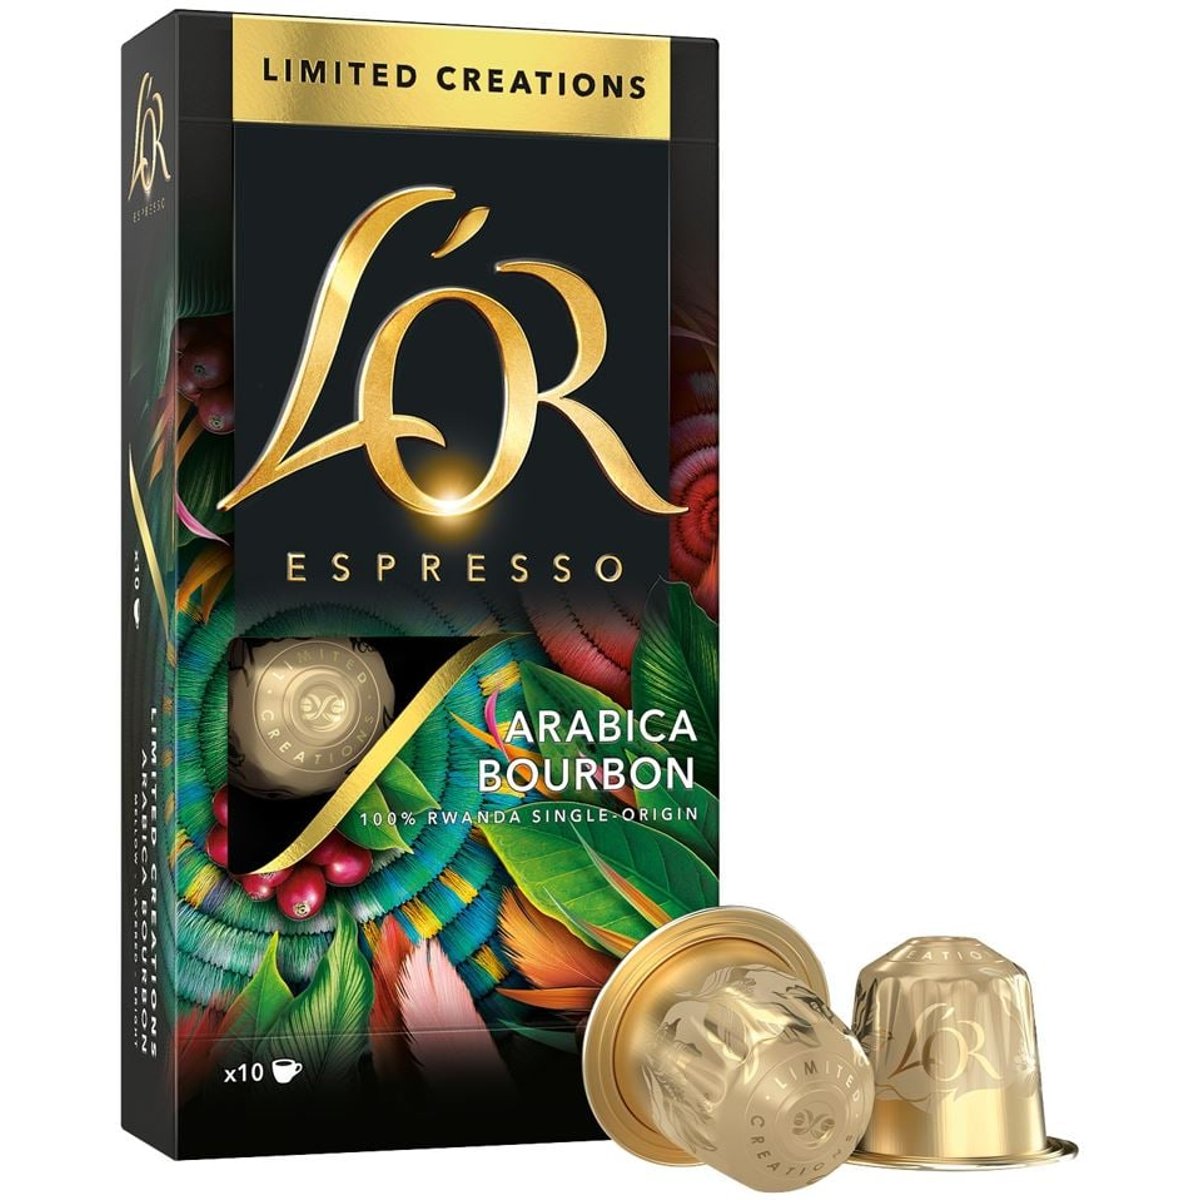 L'OR Espresso Limited Creation Rwanda Kapsle